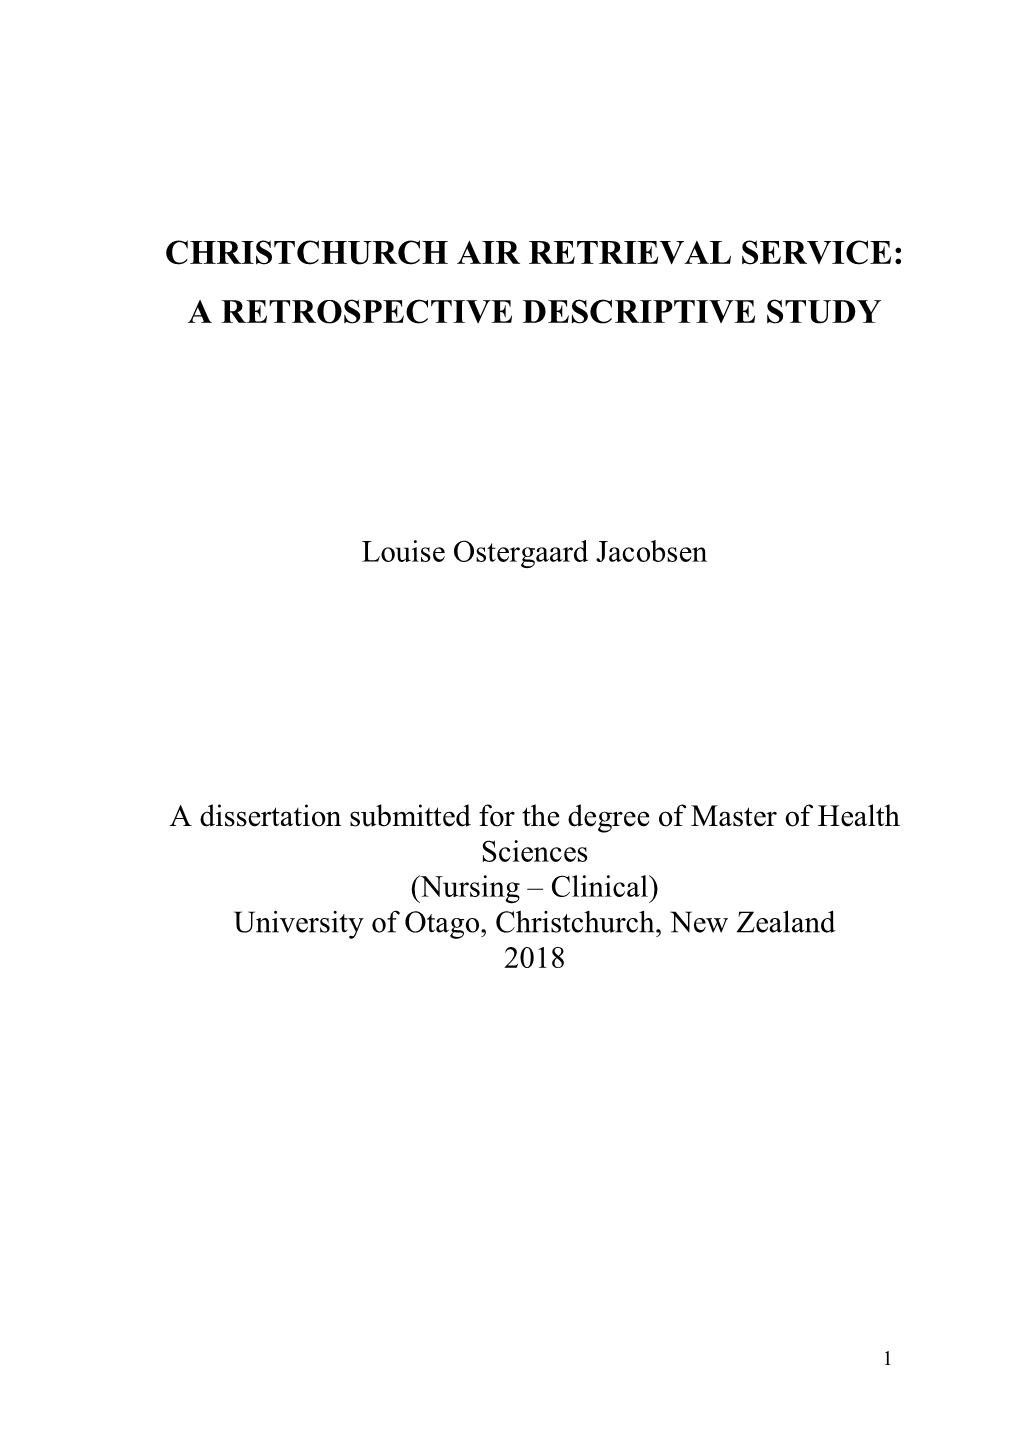 Christchurch Air Retrieval Service